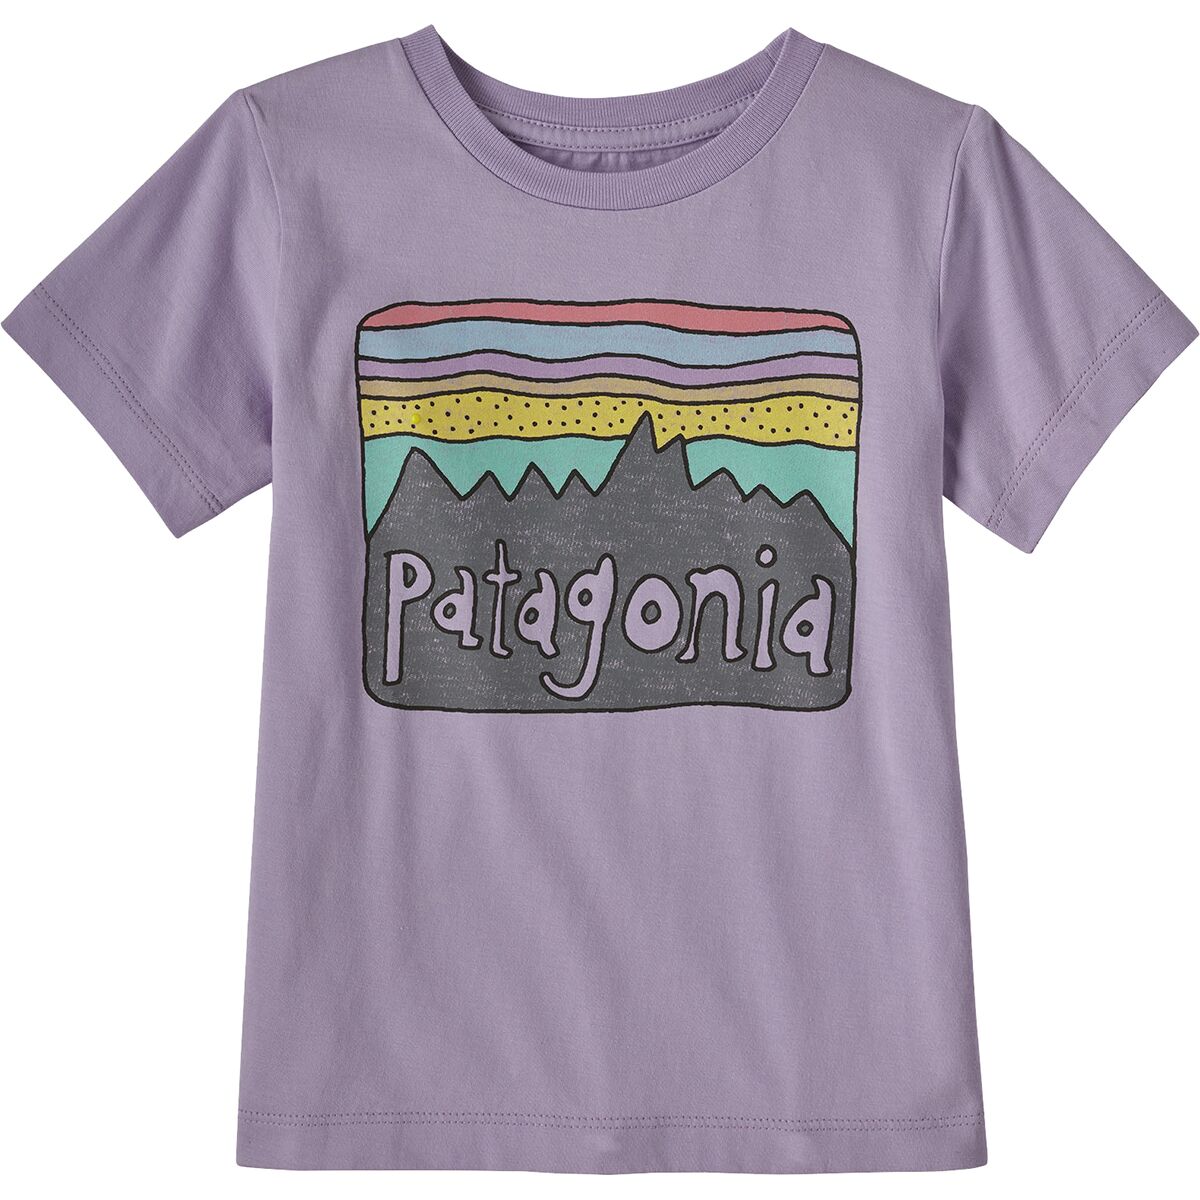 Patagonia Regenerative Organic Cotton Fitz Roy Skies Tee - Toddlers'